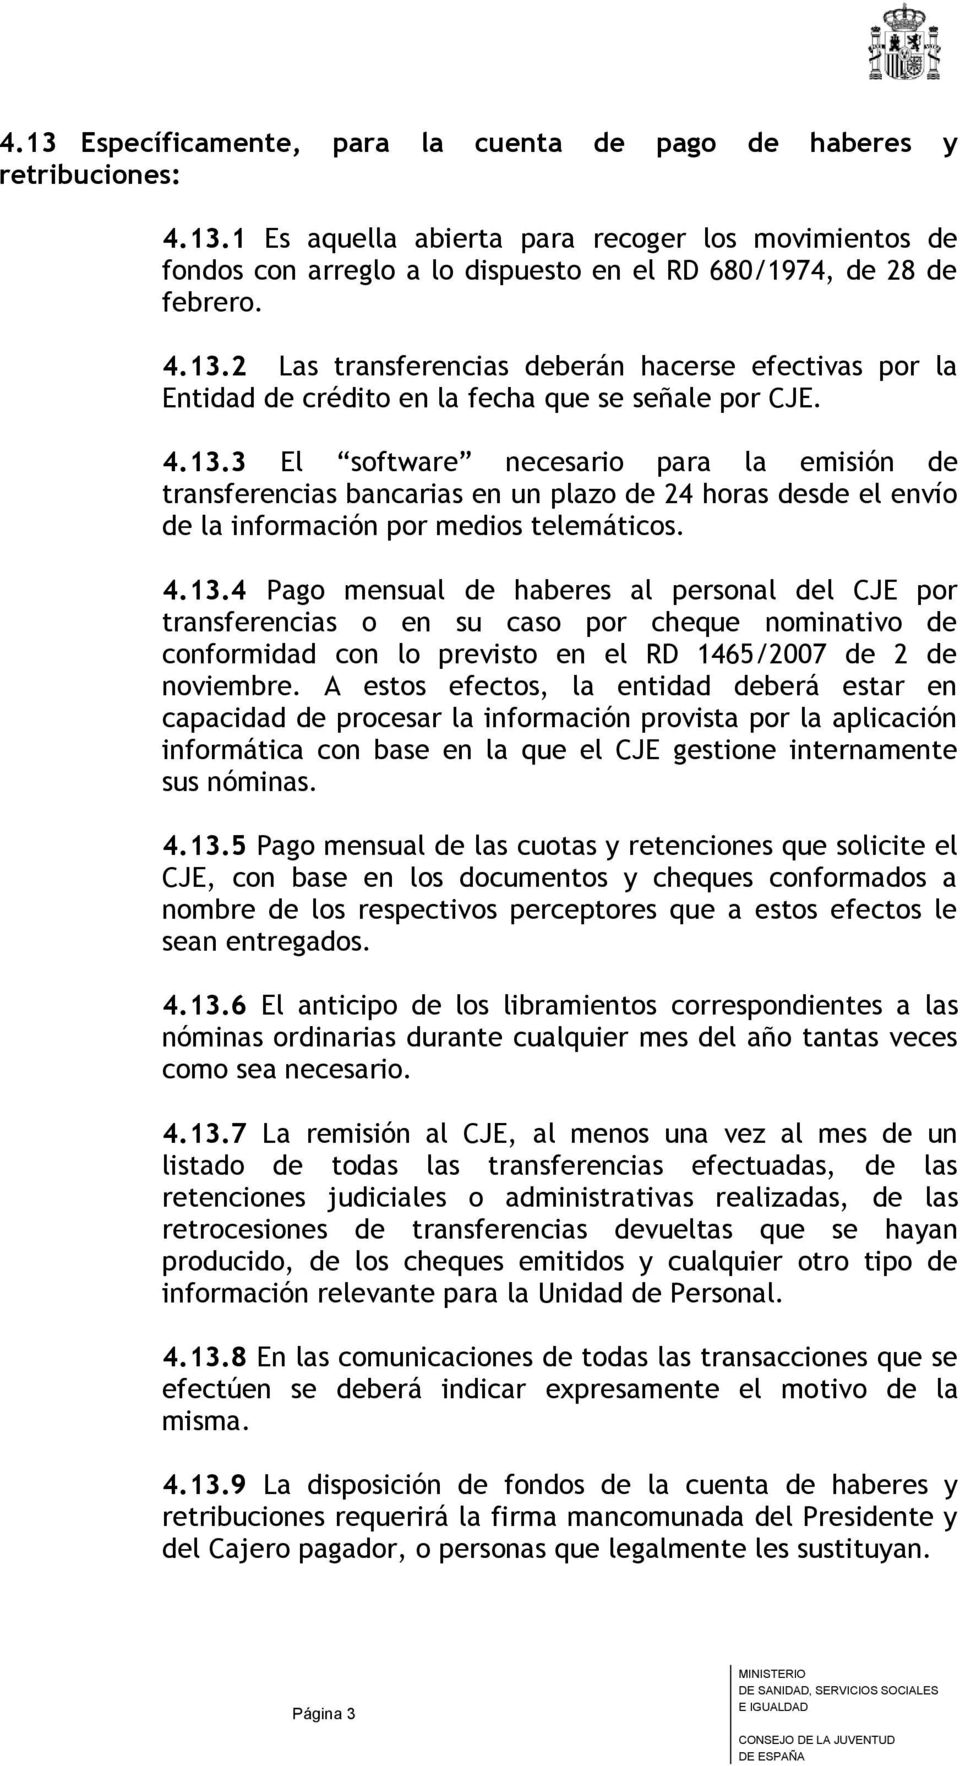 4.13.4 Pago mensual de haberes al personal del CJE por transferencias o en su caso por cheque nominativo de conformidad con lo previsto en el RD 1465/2007 de 2 de noviembre.